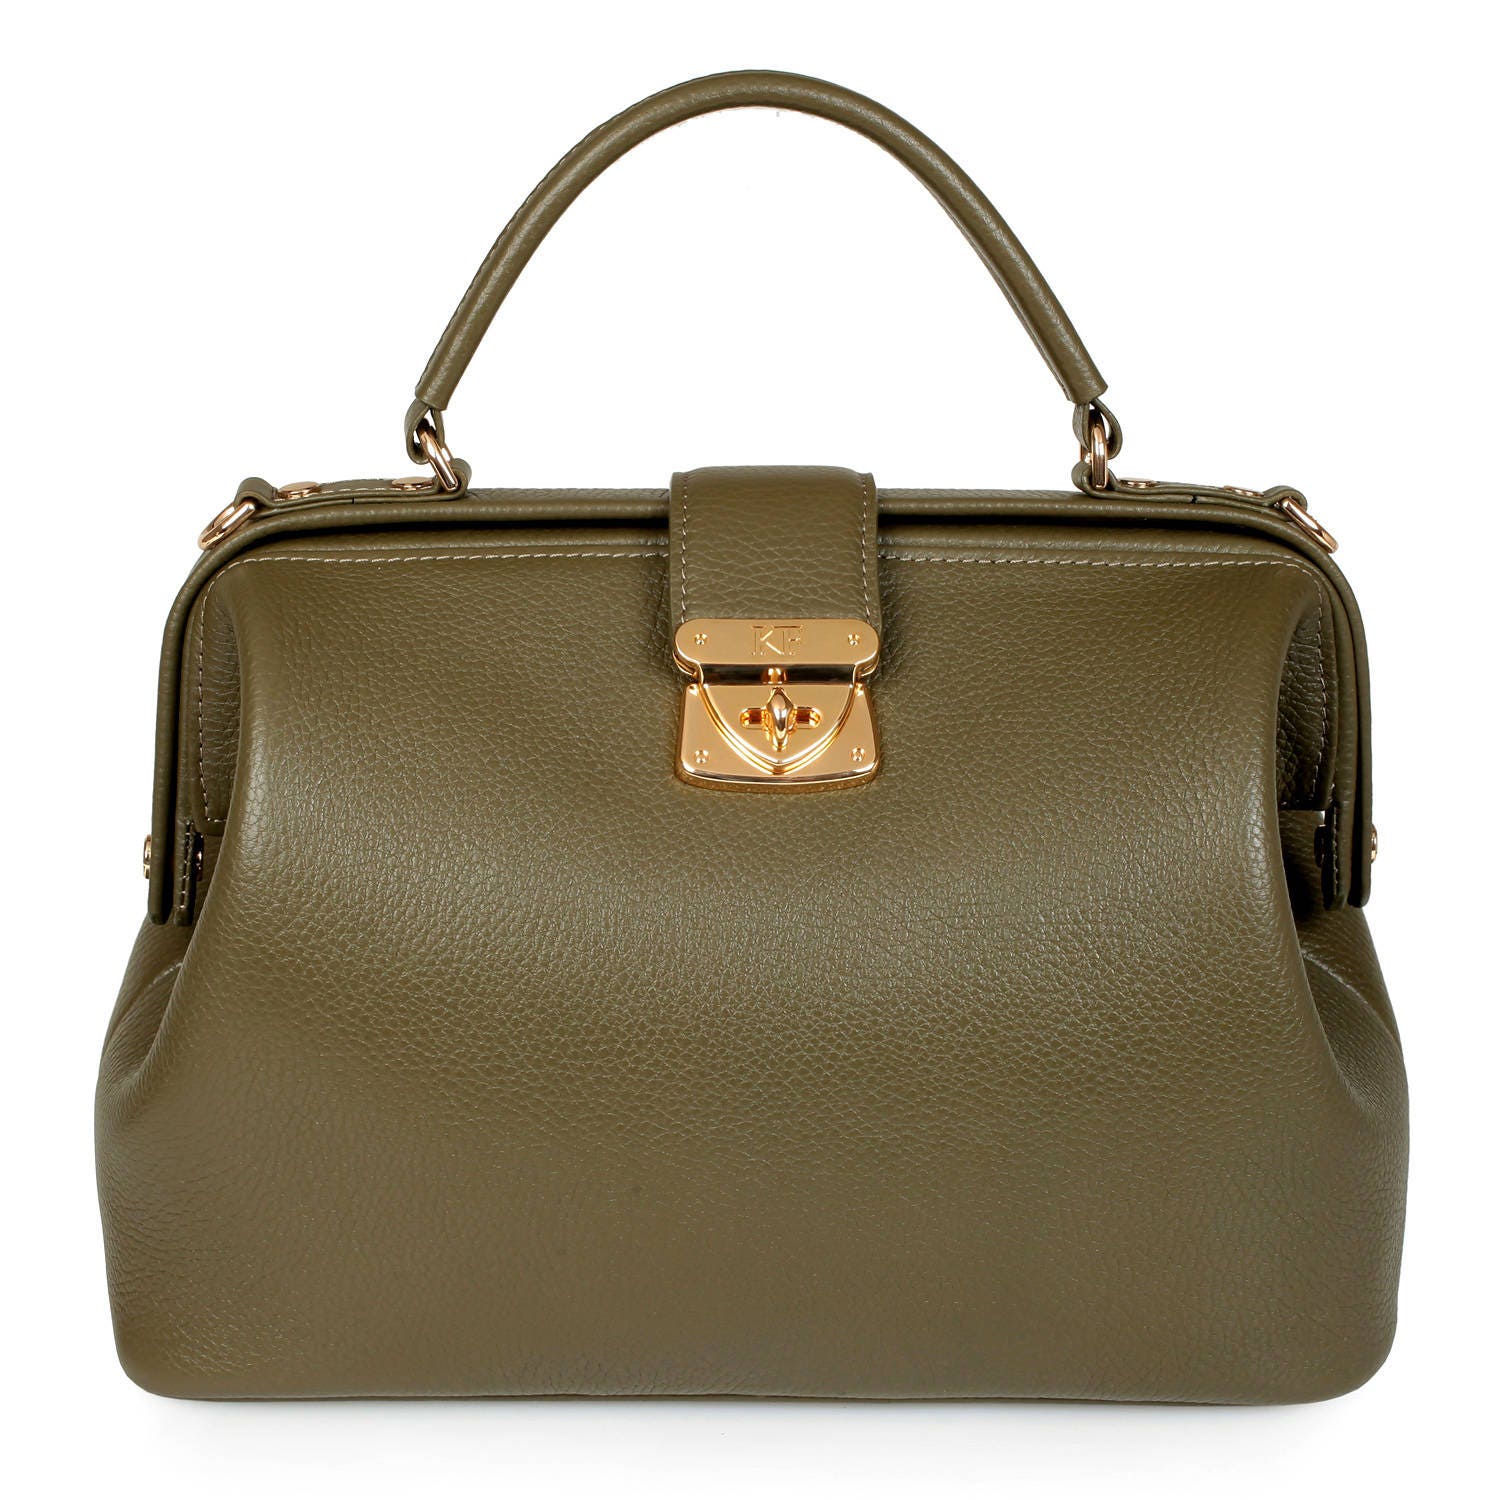 Leather doctor bag for women Olive Leather Handbag Top | Etsy